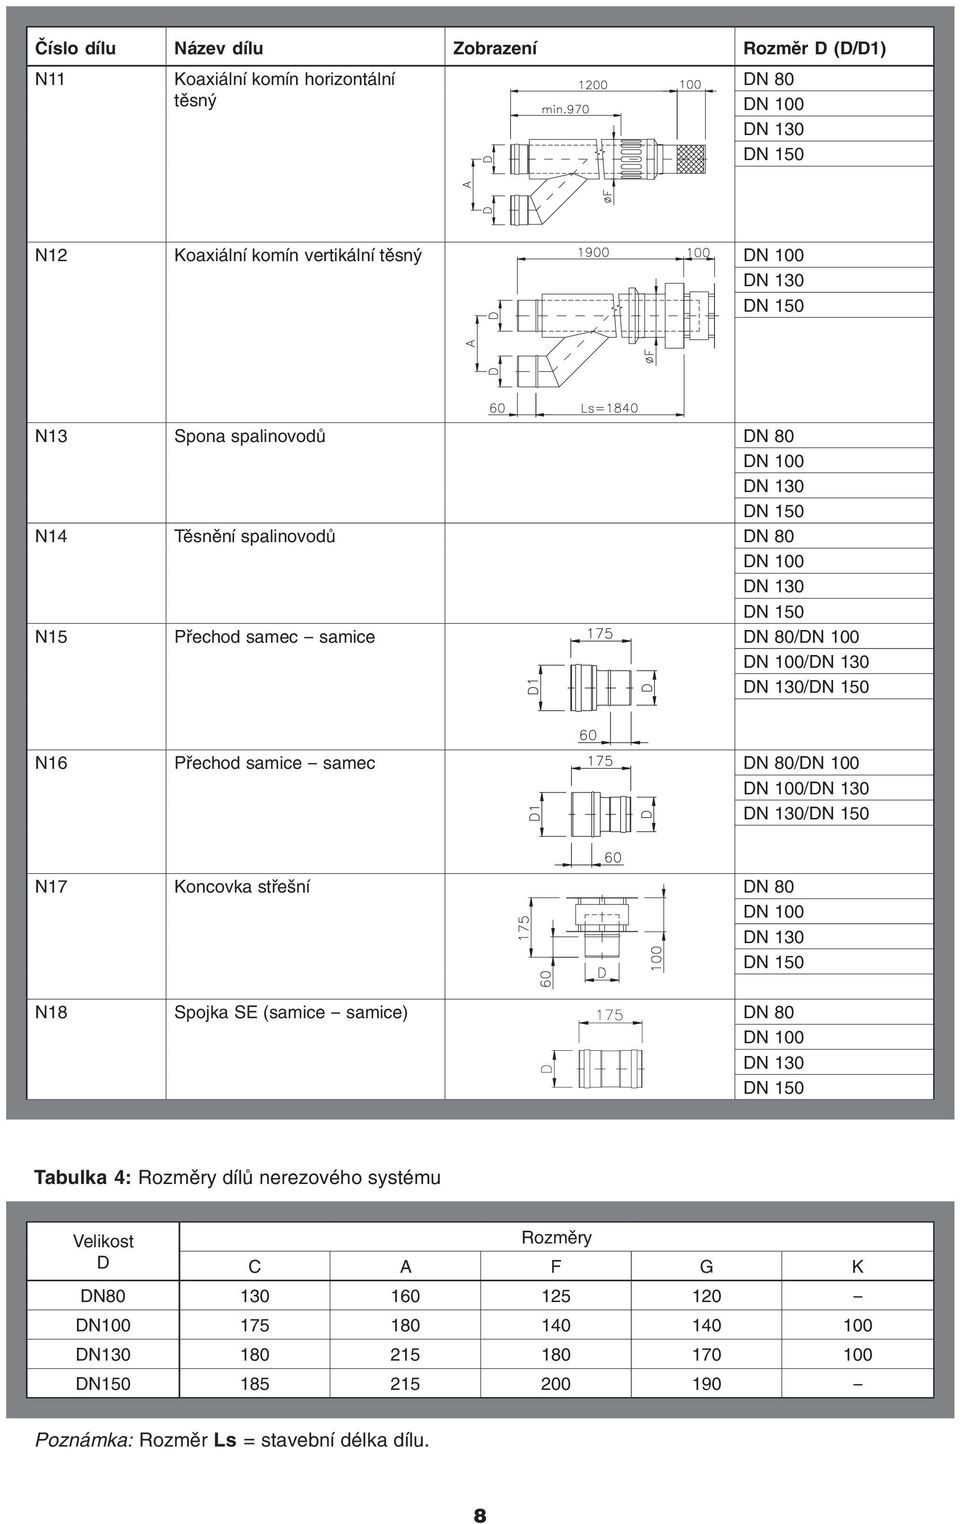 Koncovka střešní DN 80 N18 Spojka SE (samice - samice) DN 80 Tabulka 4: Rozměry dílů nerezového systému Velikost Rozměry D C A F G K